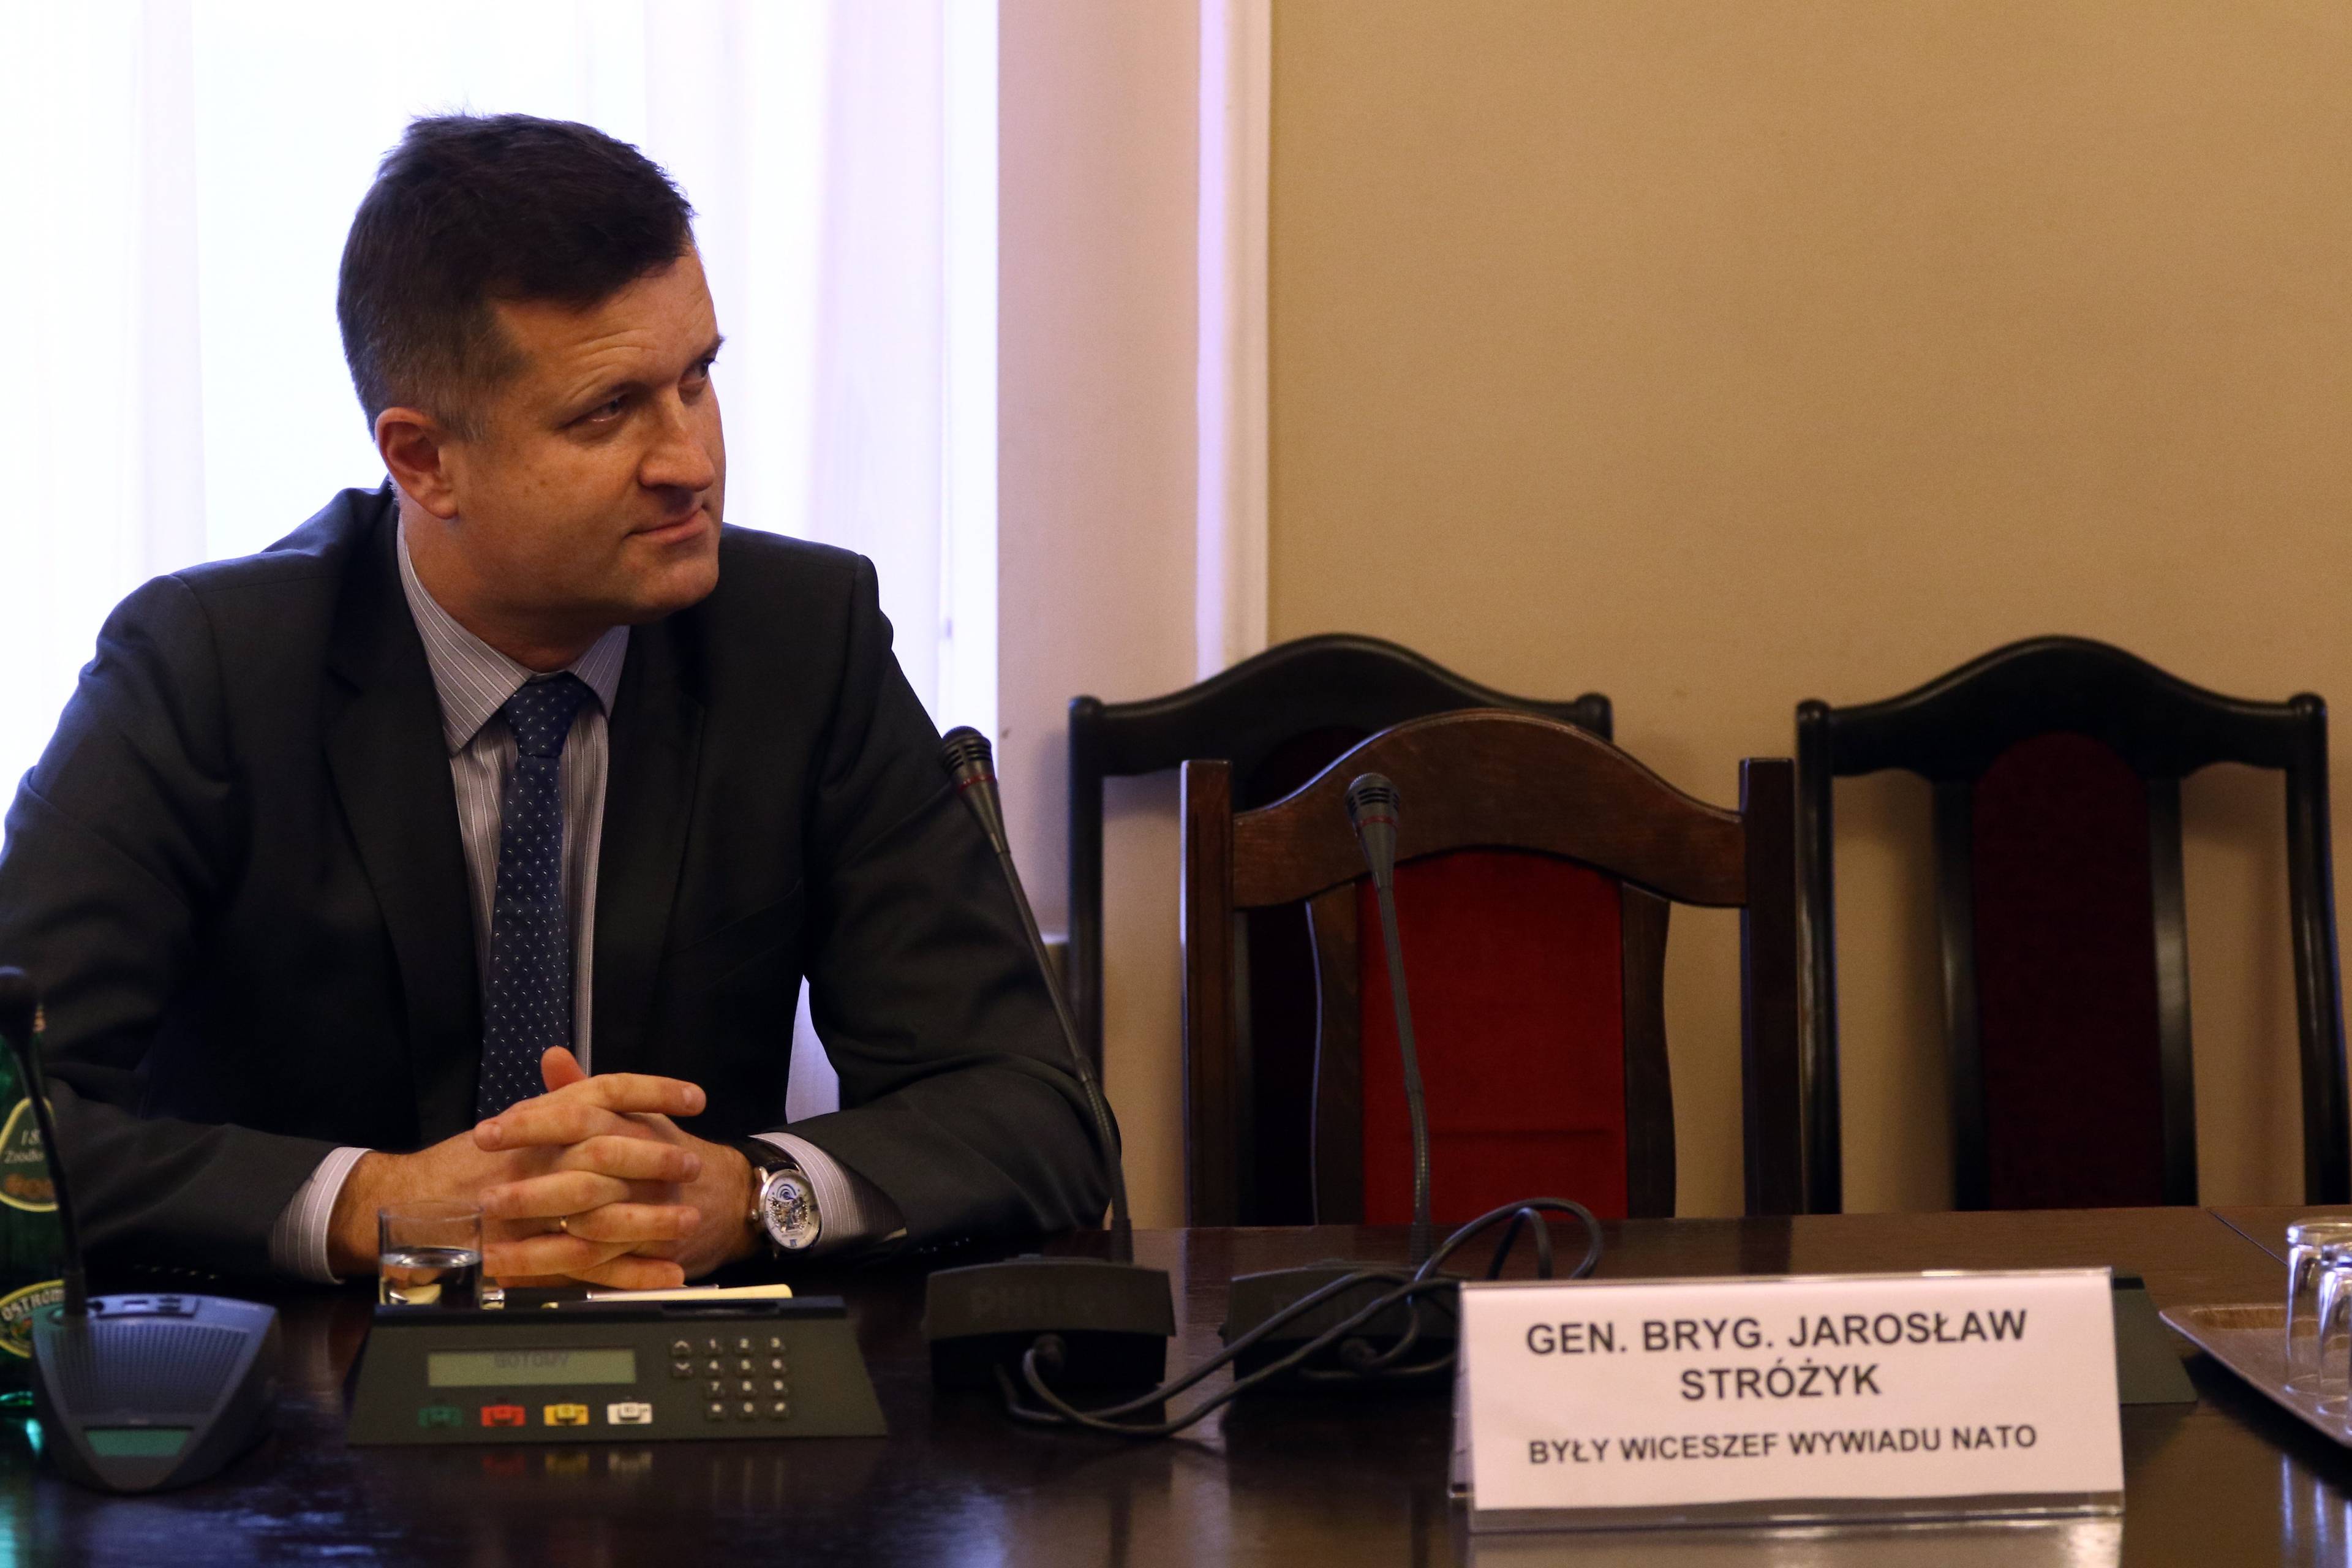 Generał Jarosław Stróżyk podczas posiedzenia zespołu parlamentarnego w Sejmie poprzedniej kadencji